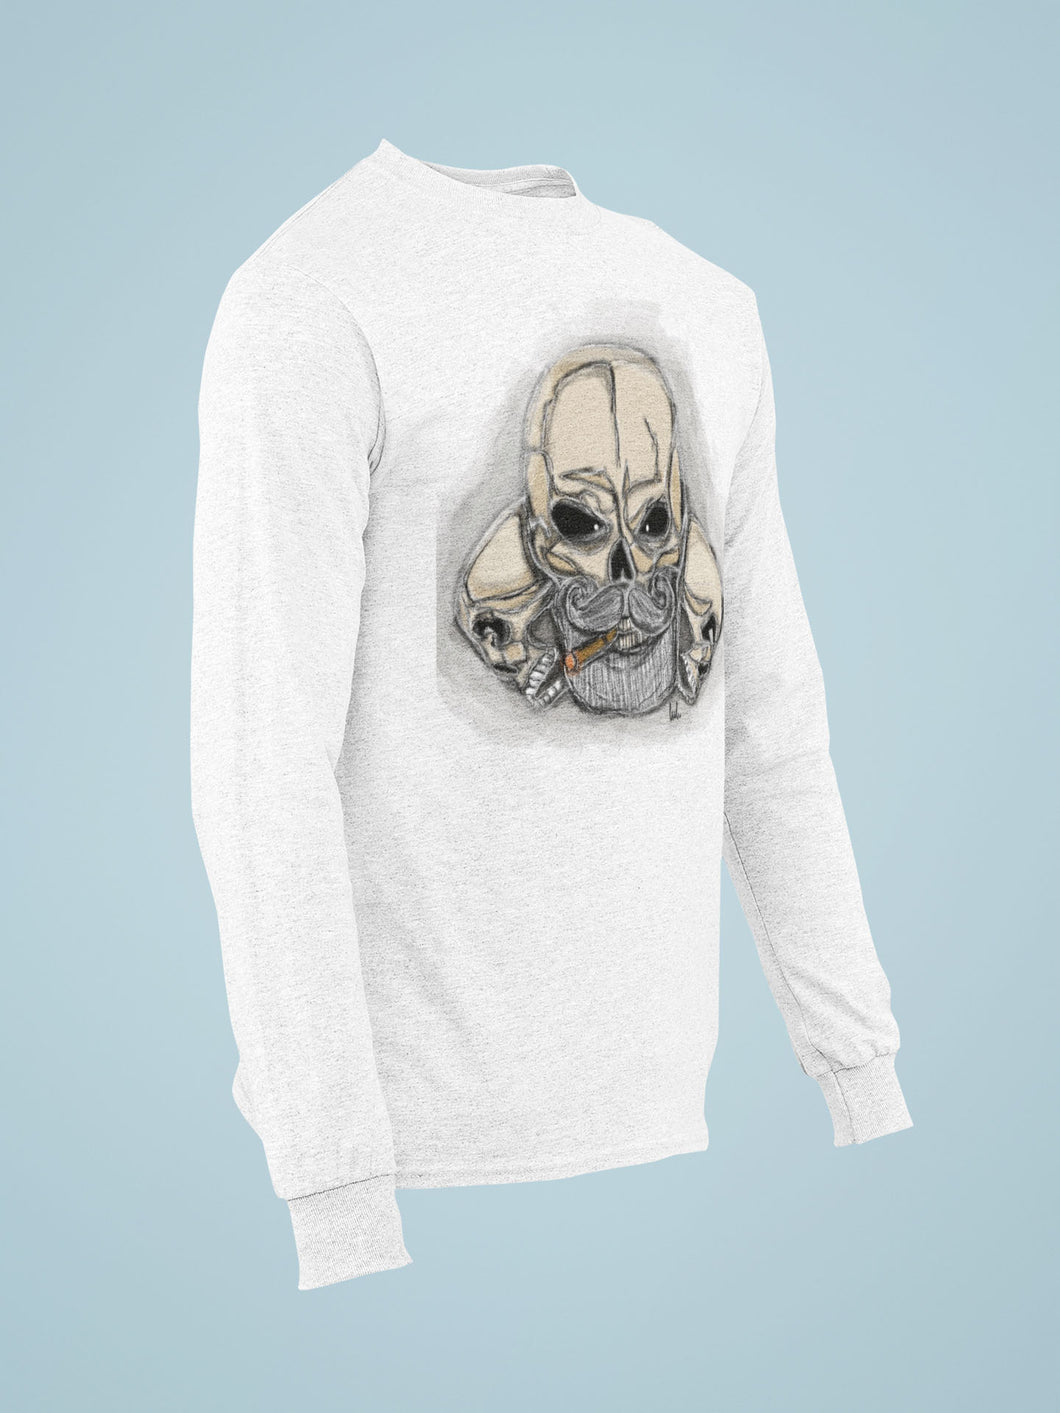 Men's long-sleeved T-shirt skull - Gifts for Men - Valentine's Day